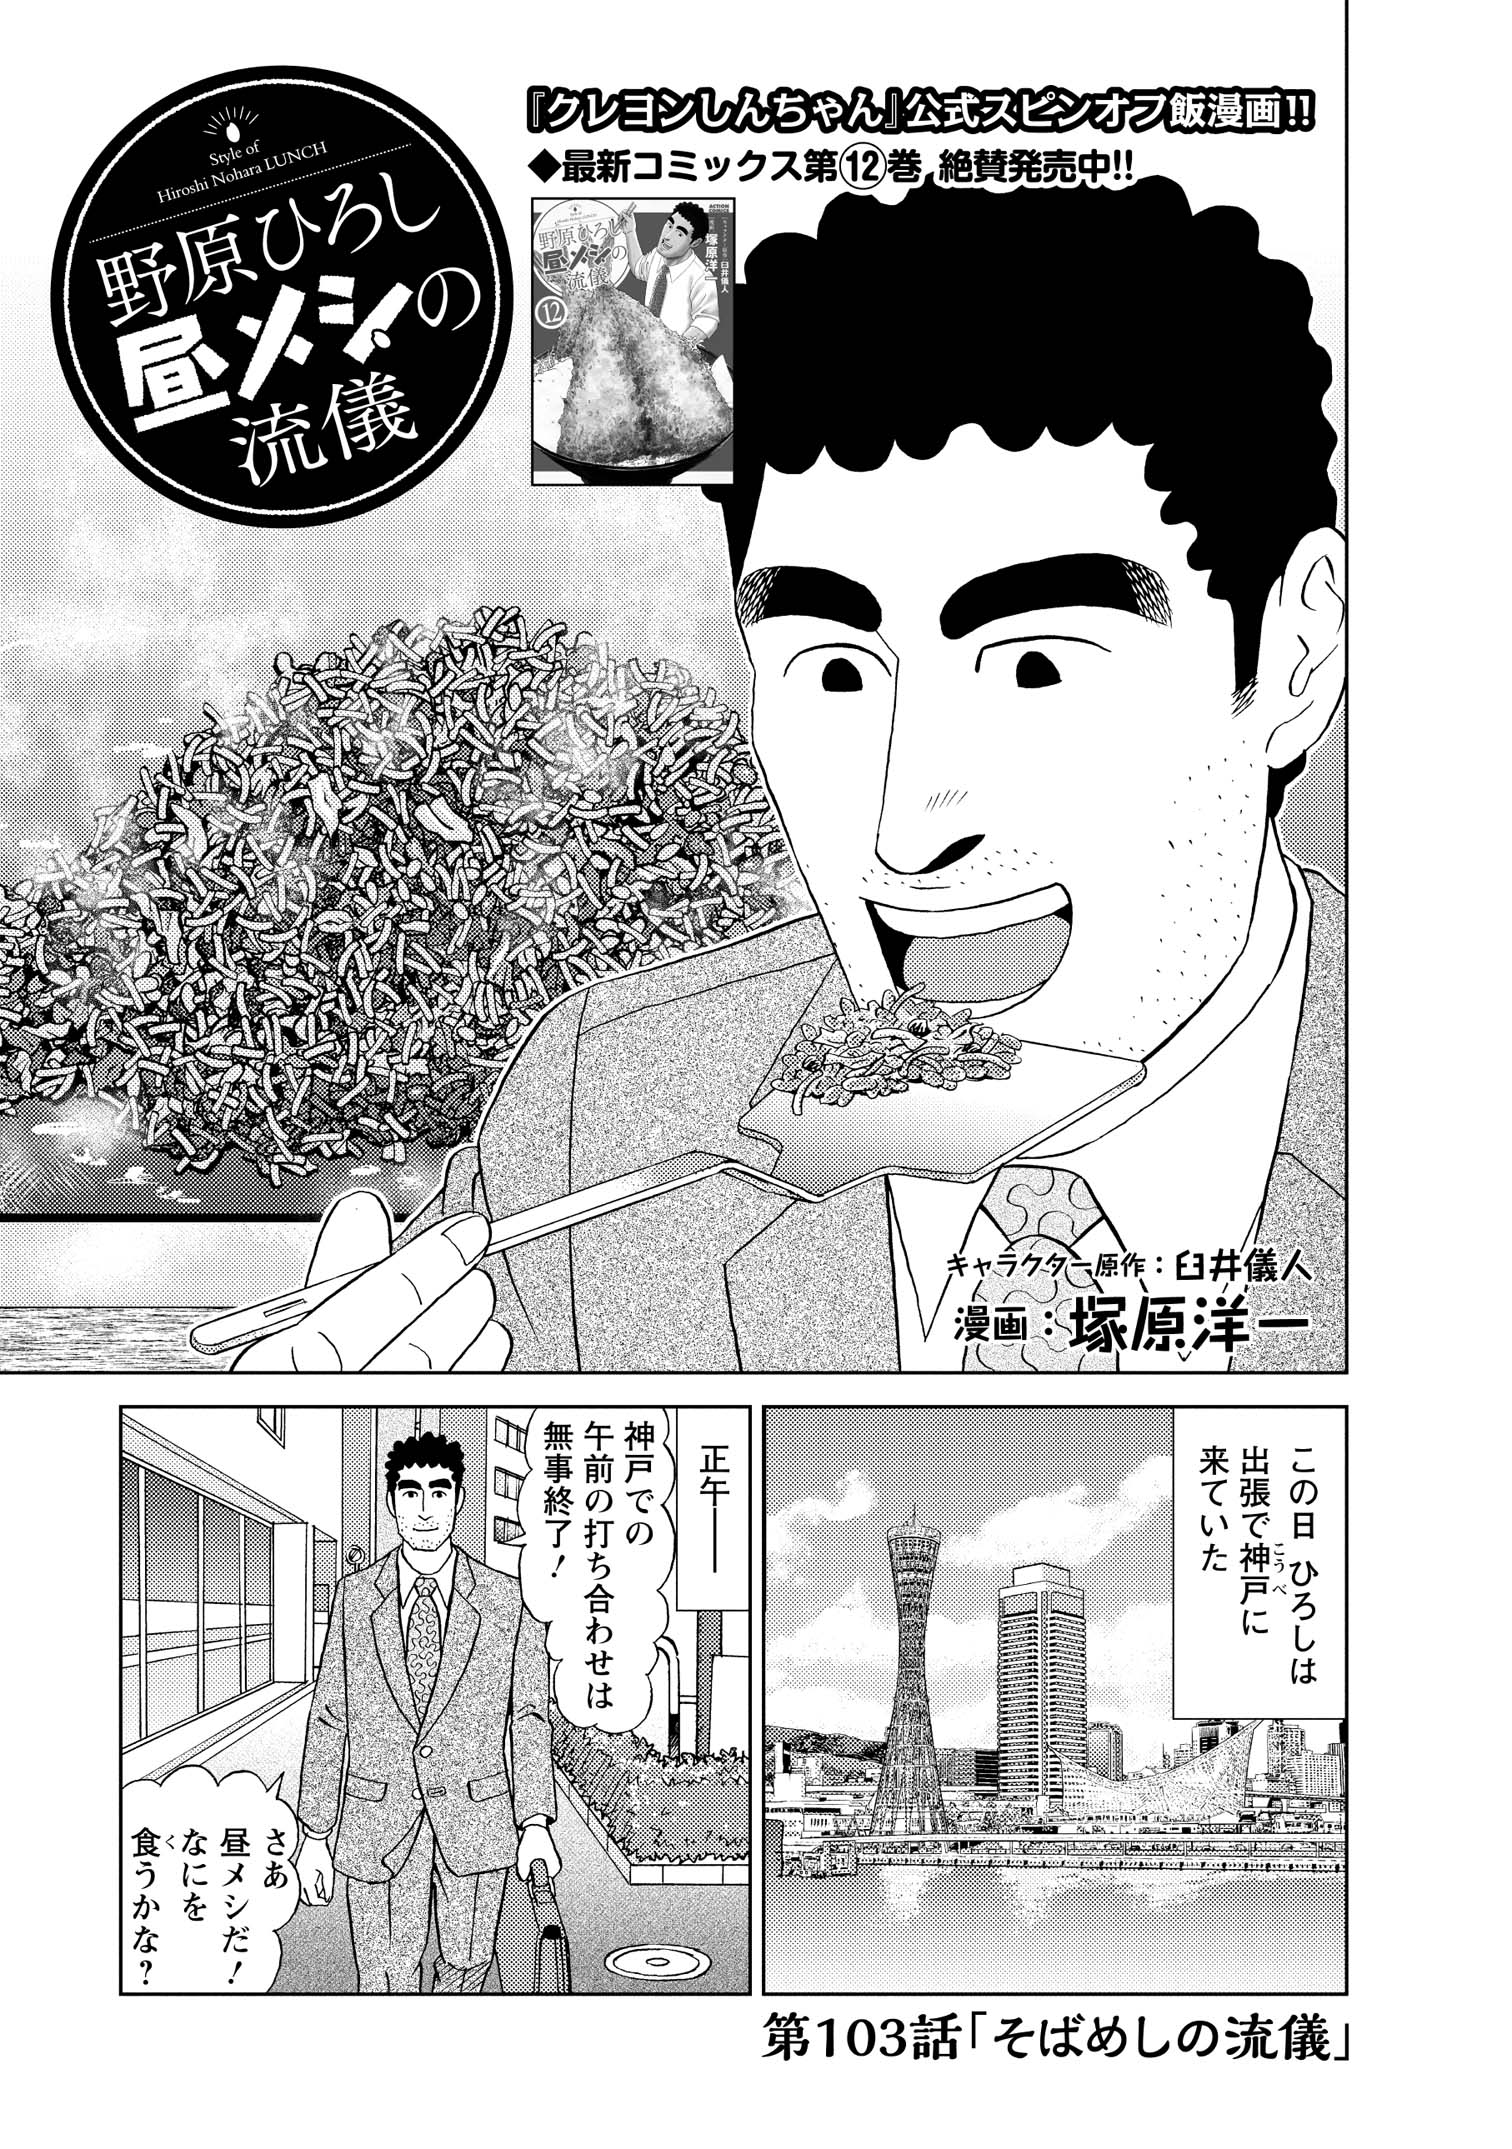 第103話「そばめしの流儀」　この日ひろしは出張で神戸に来ていた　正午-　神戸での午前の打ち合わせは無事終了！　さあ昼メシだ！なにを食うかな？